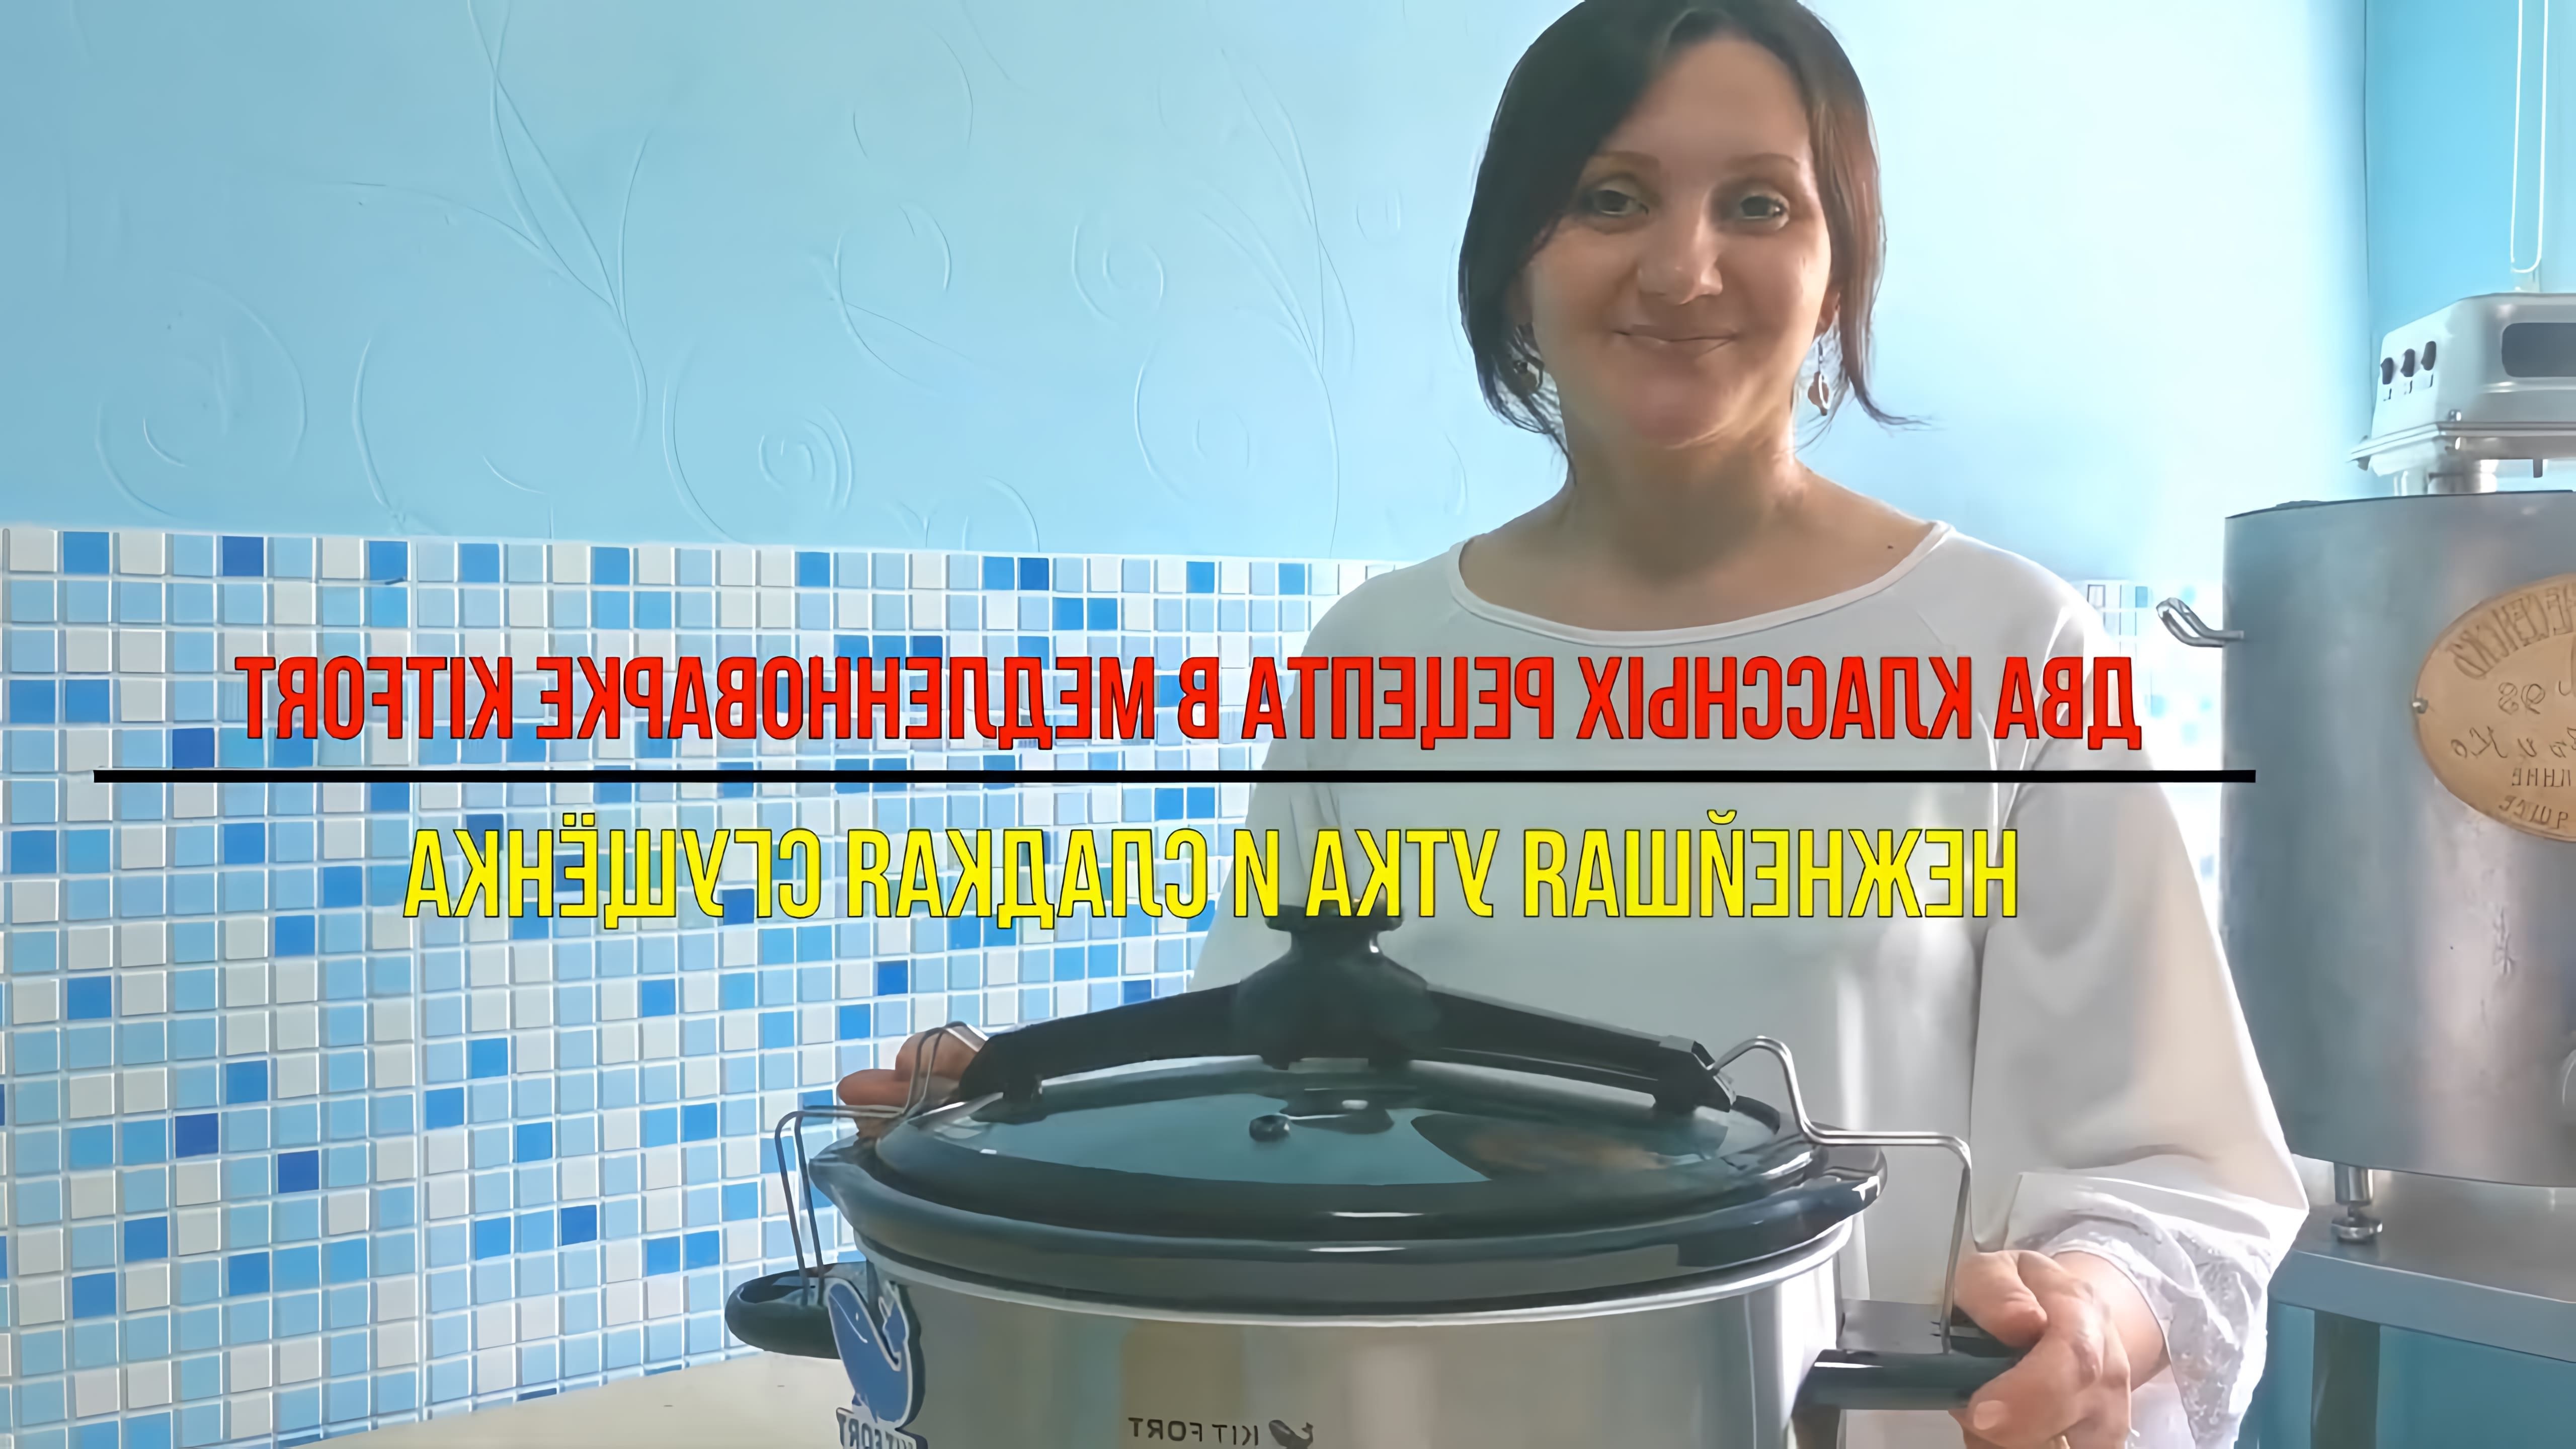 В данном видео представлен обзор медленноварки Kitfort KT-214, которая позволяет готовить блюда с эффектом русской печи